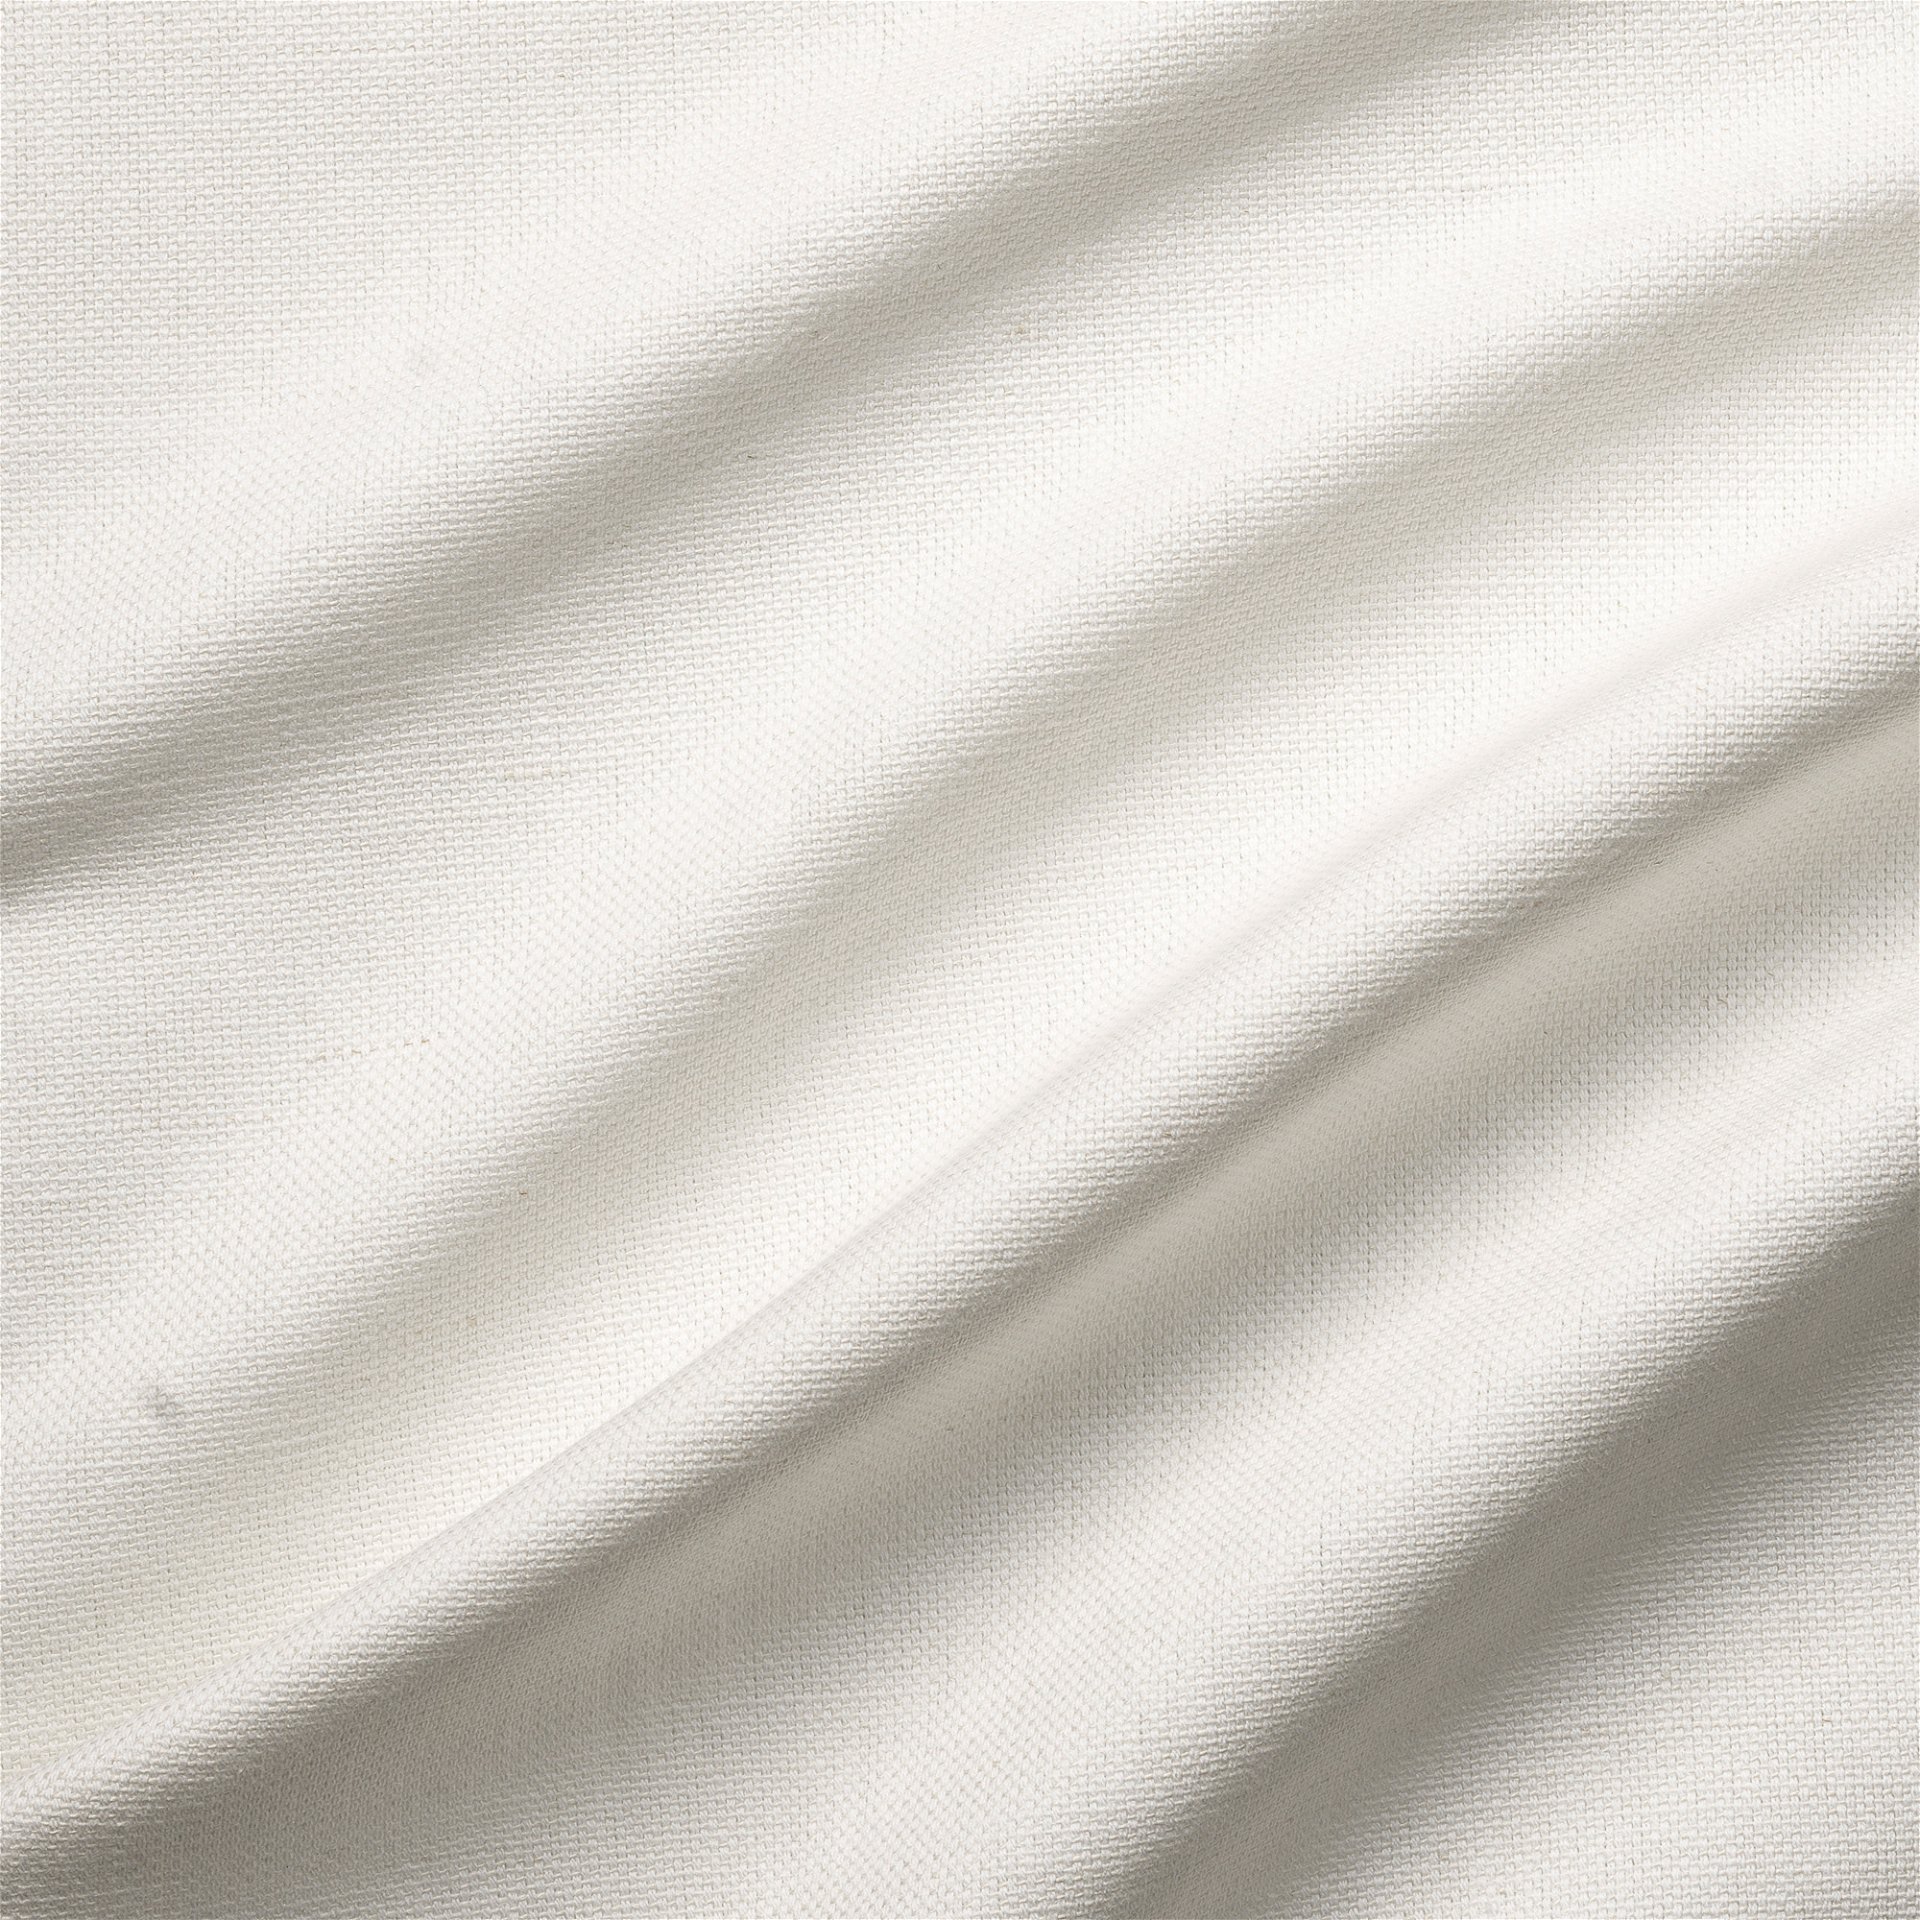 Belgian Linen